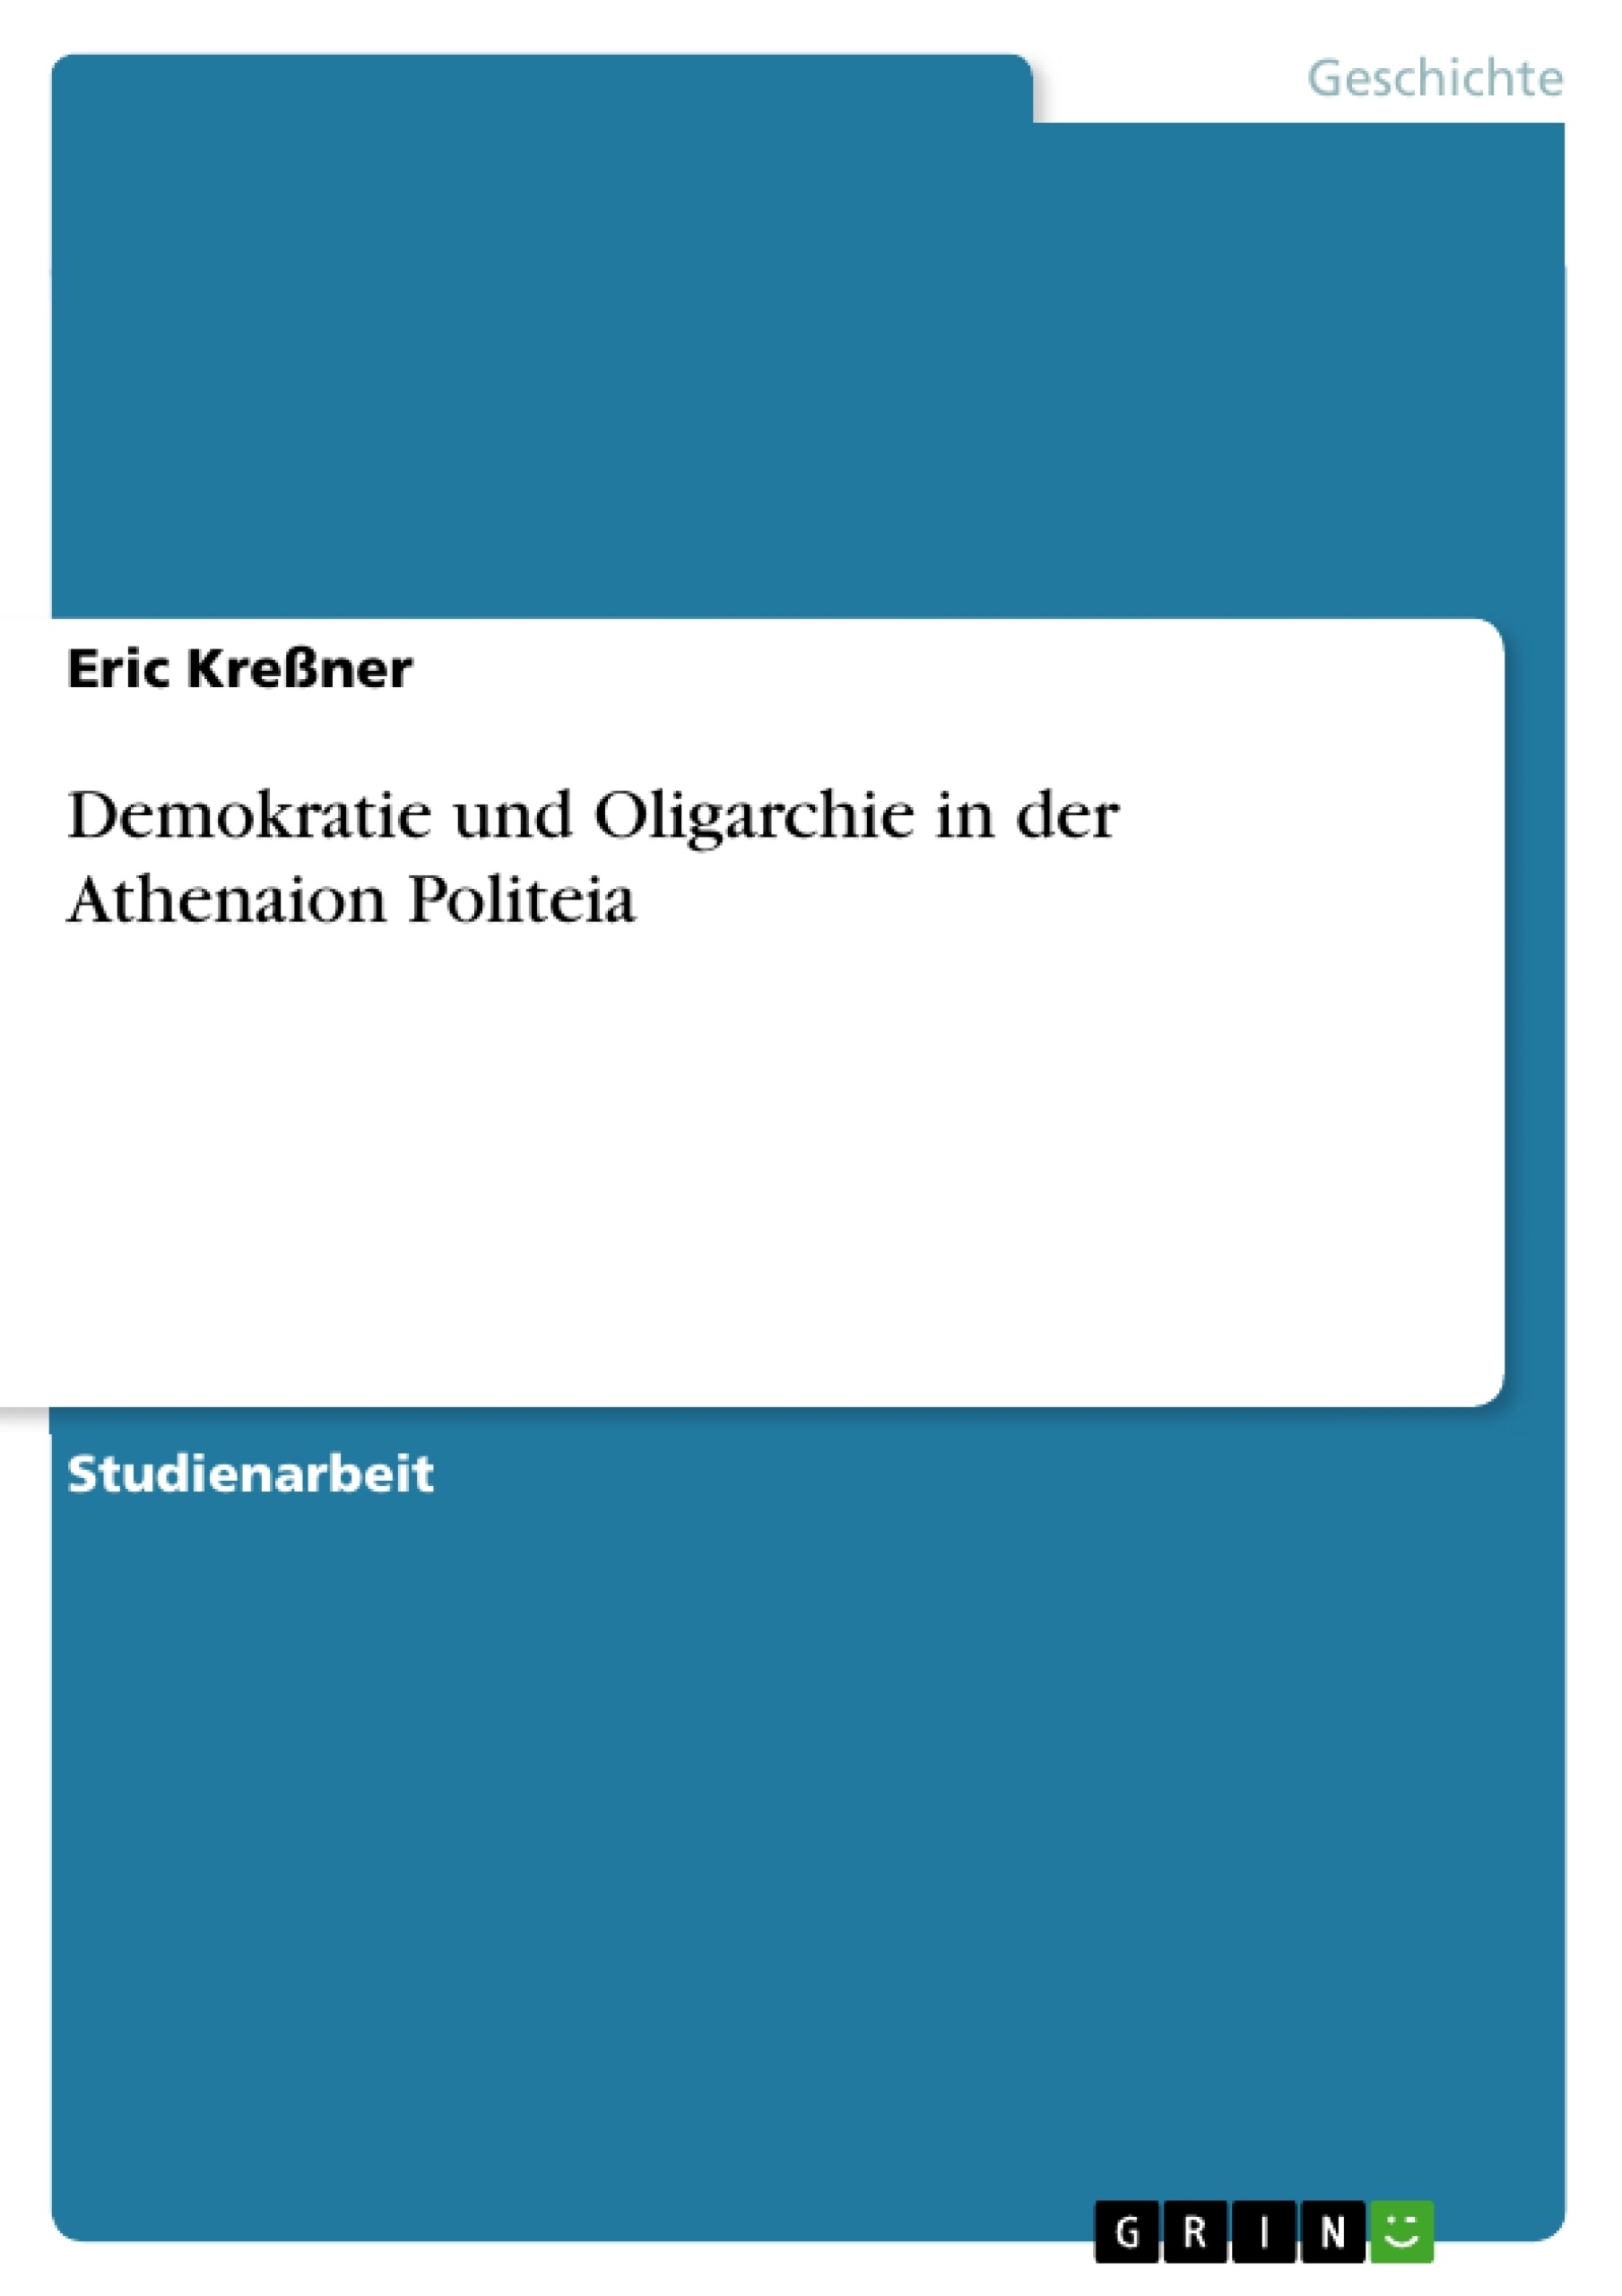 Título: Demokratie und Oligarchie in der Athenaion Politeia